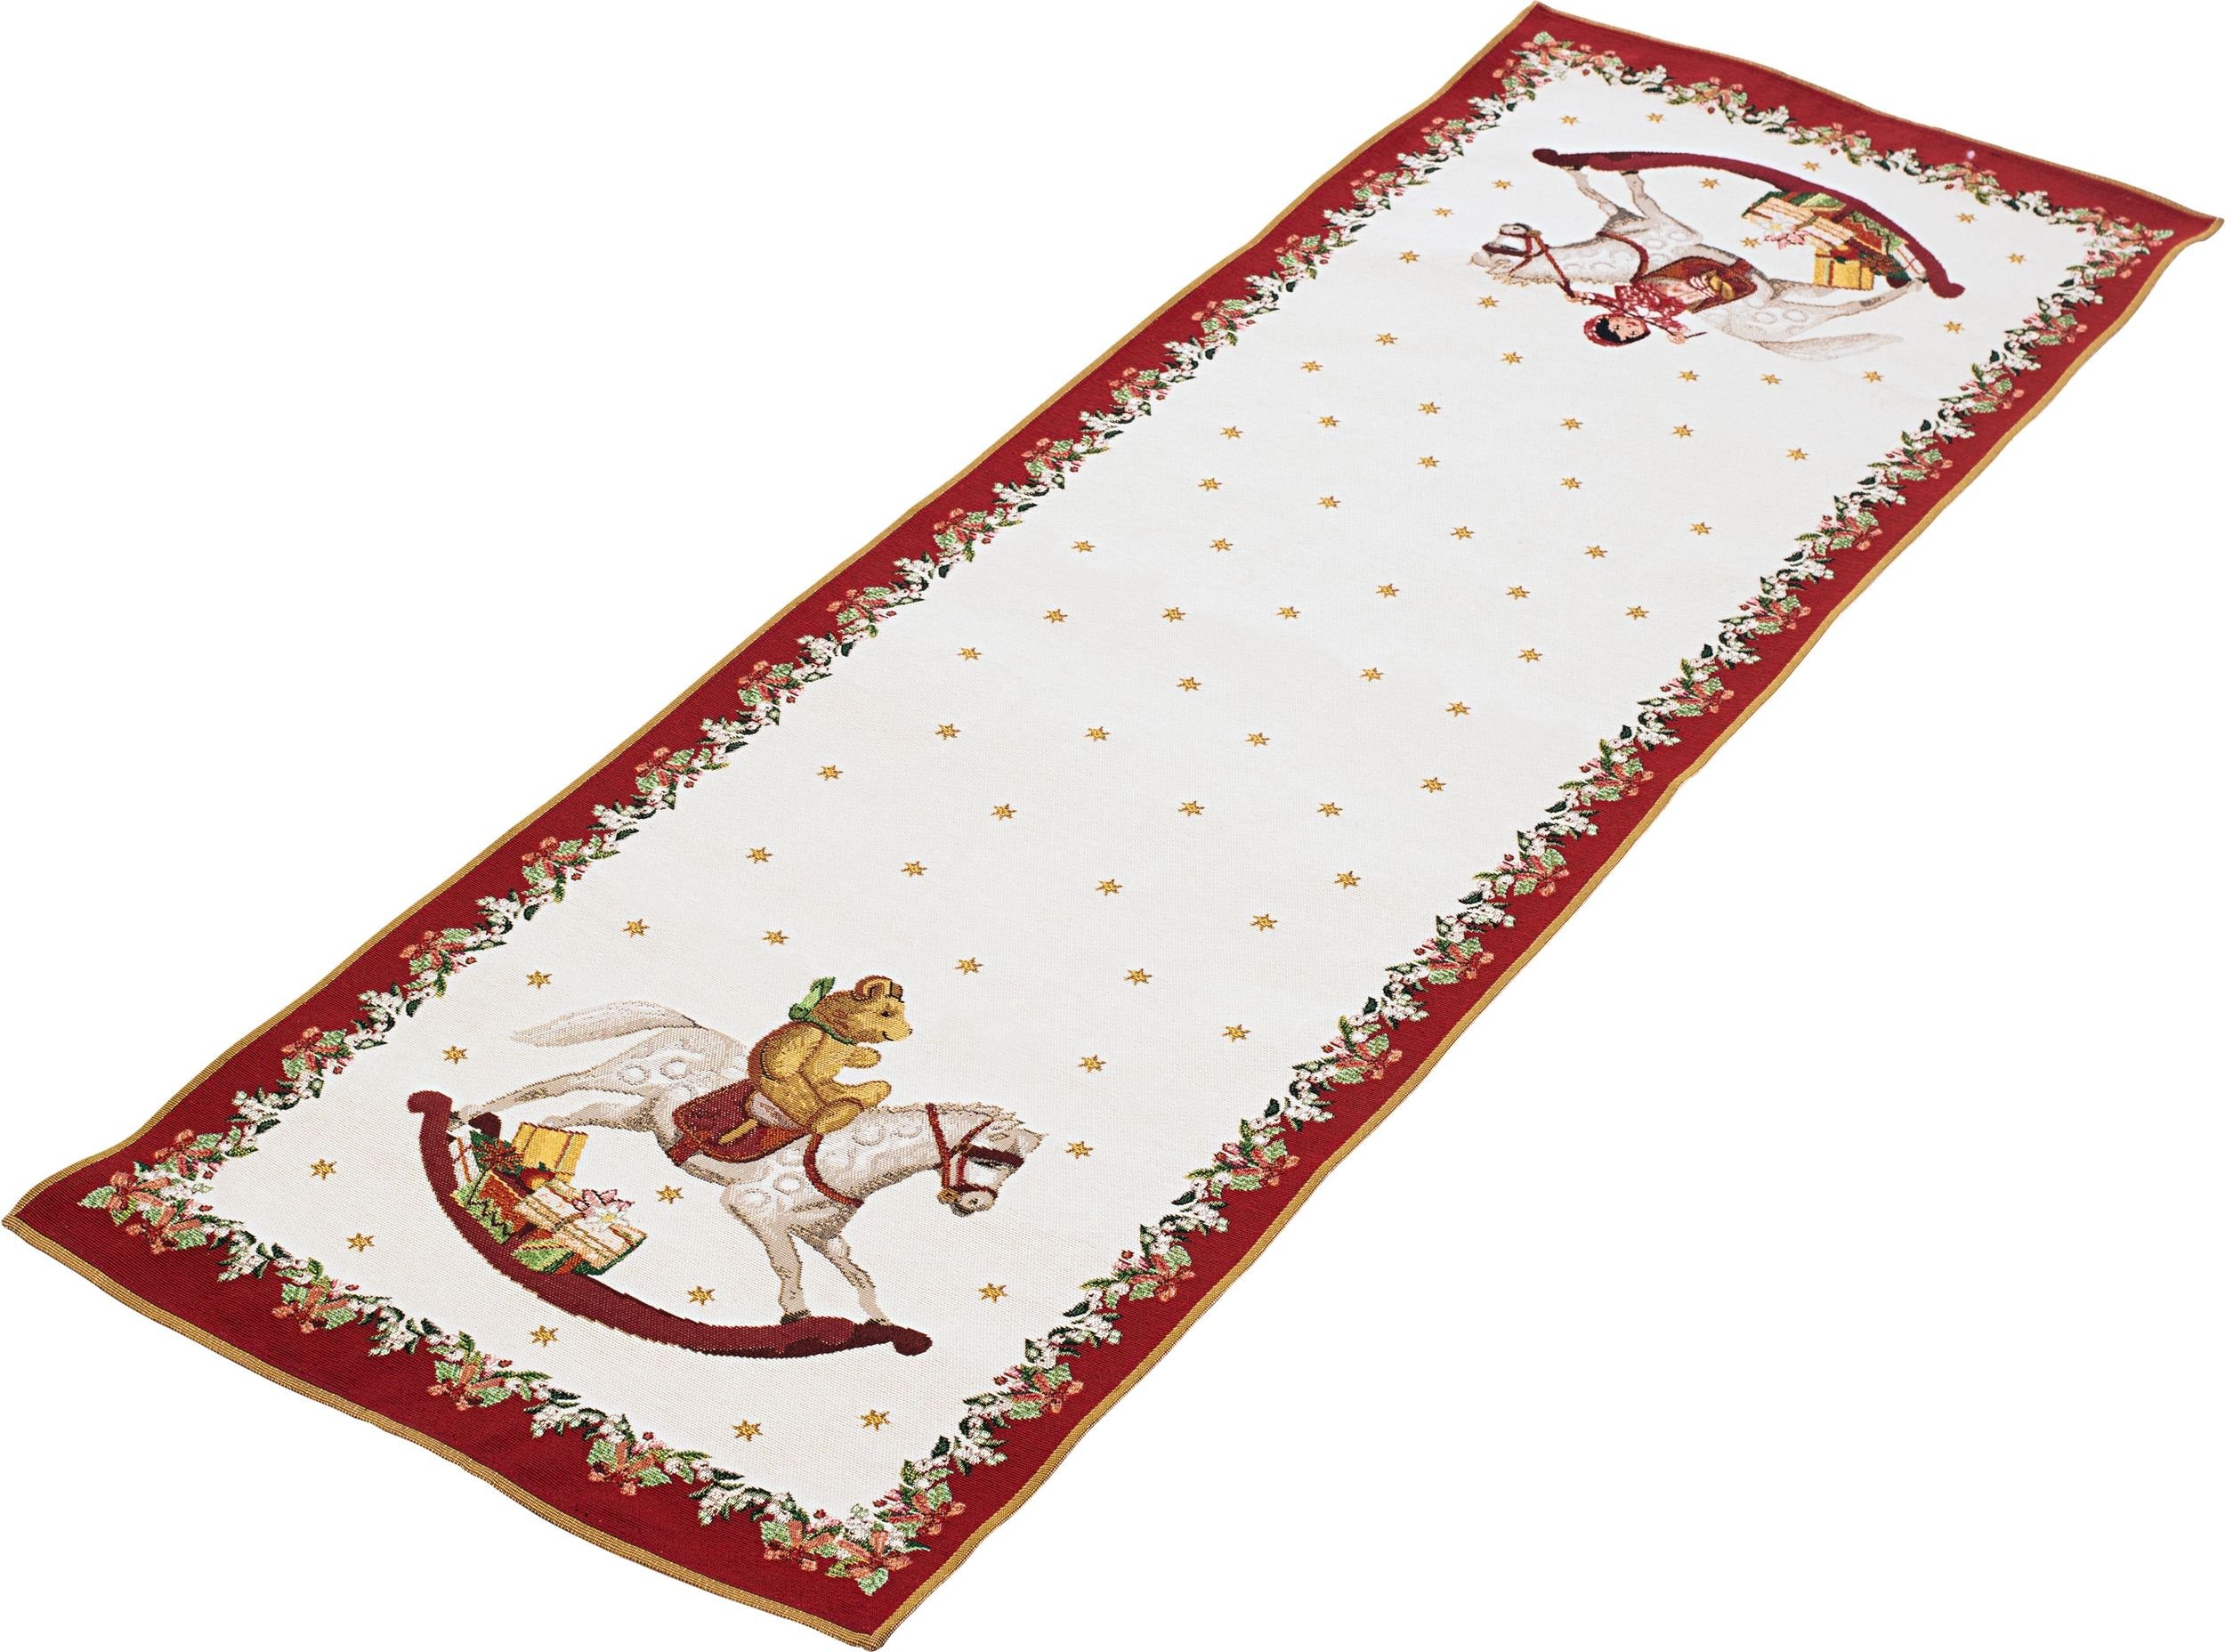 Toy's Fantasy Carpet runner 49 x 143 cm